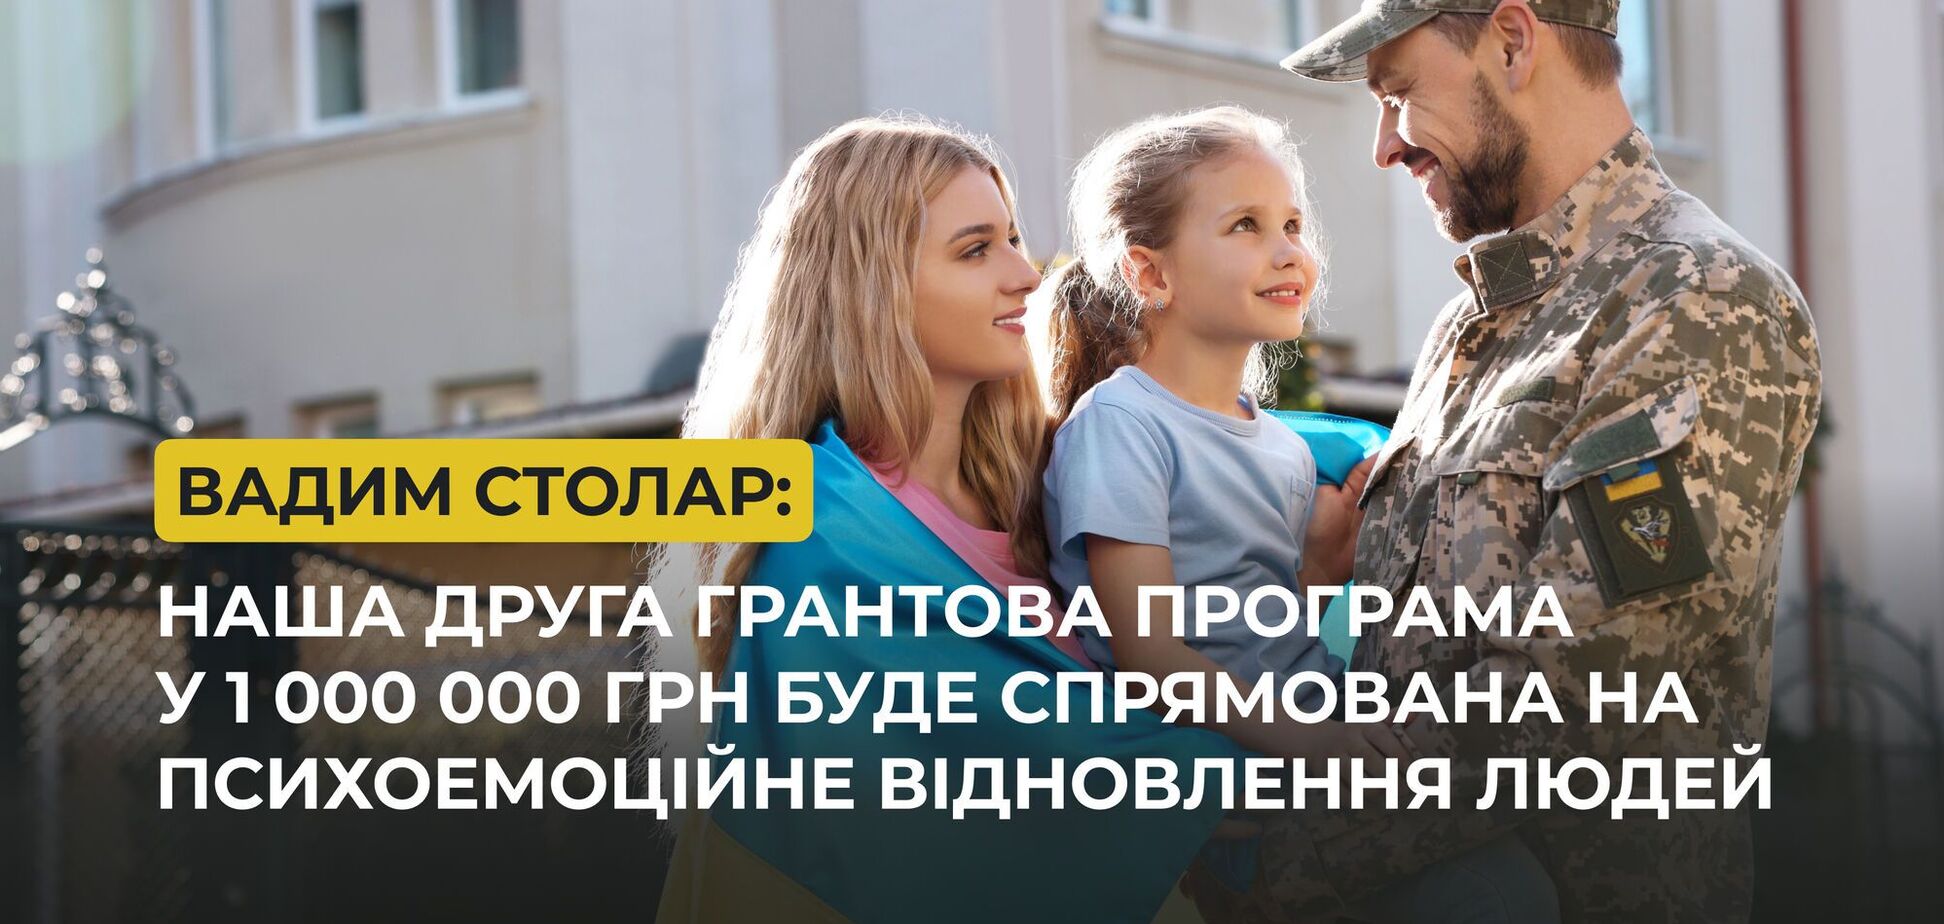 Фонд Вадима Столара направит 1 млн грн на проекты для психоэмоционального восстановления пострадавших от войны